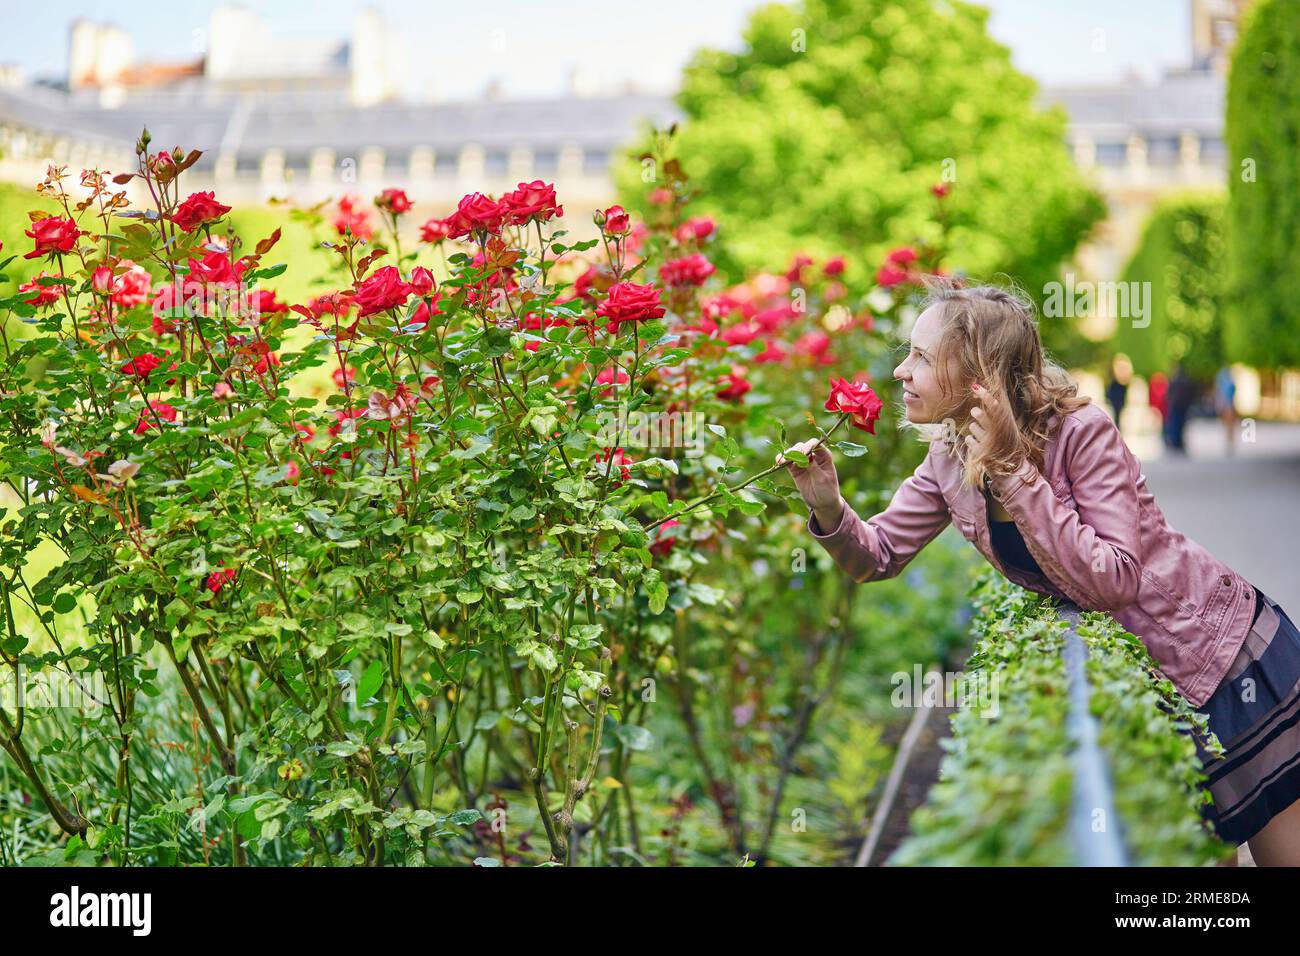 Beautiful Parisian woman in a Parisian park Stock Photo